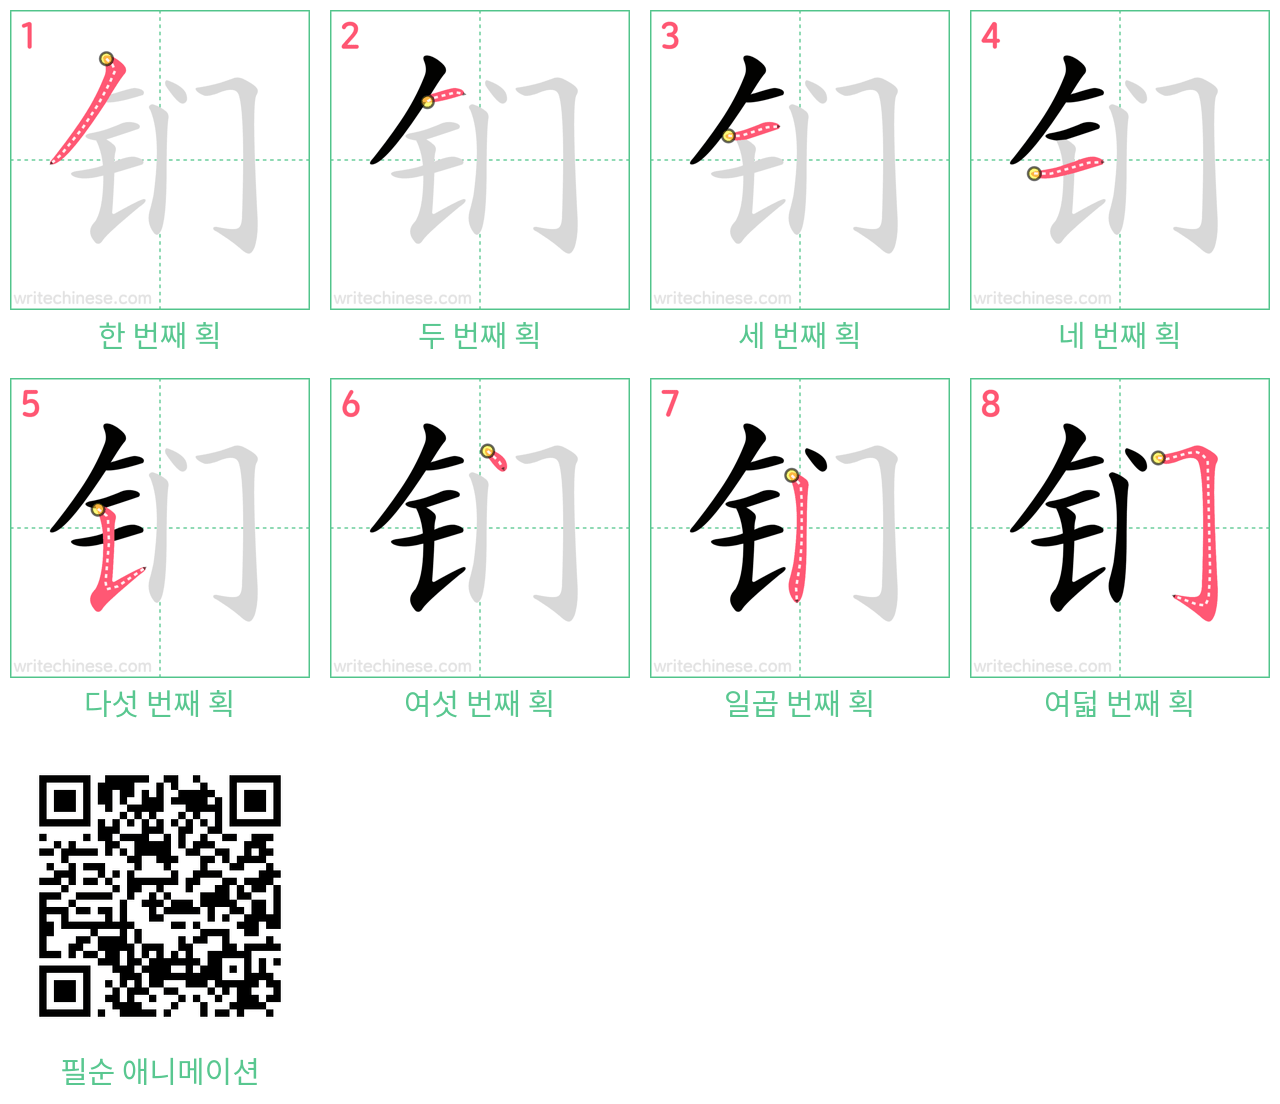 钔 step-by-step stroke order diagrams